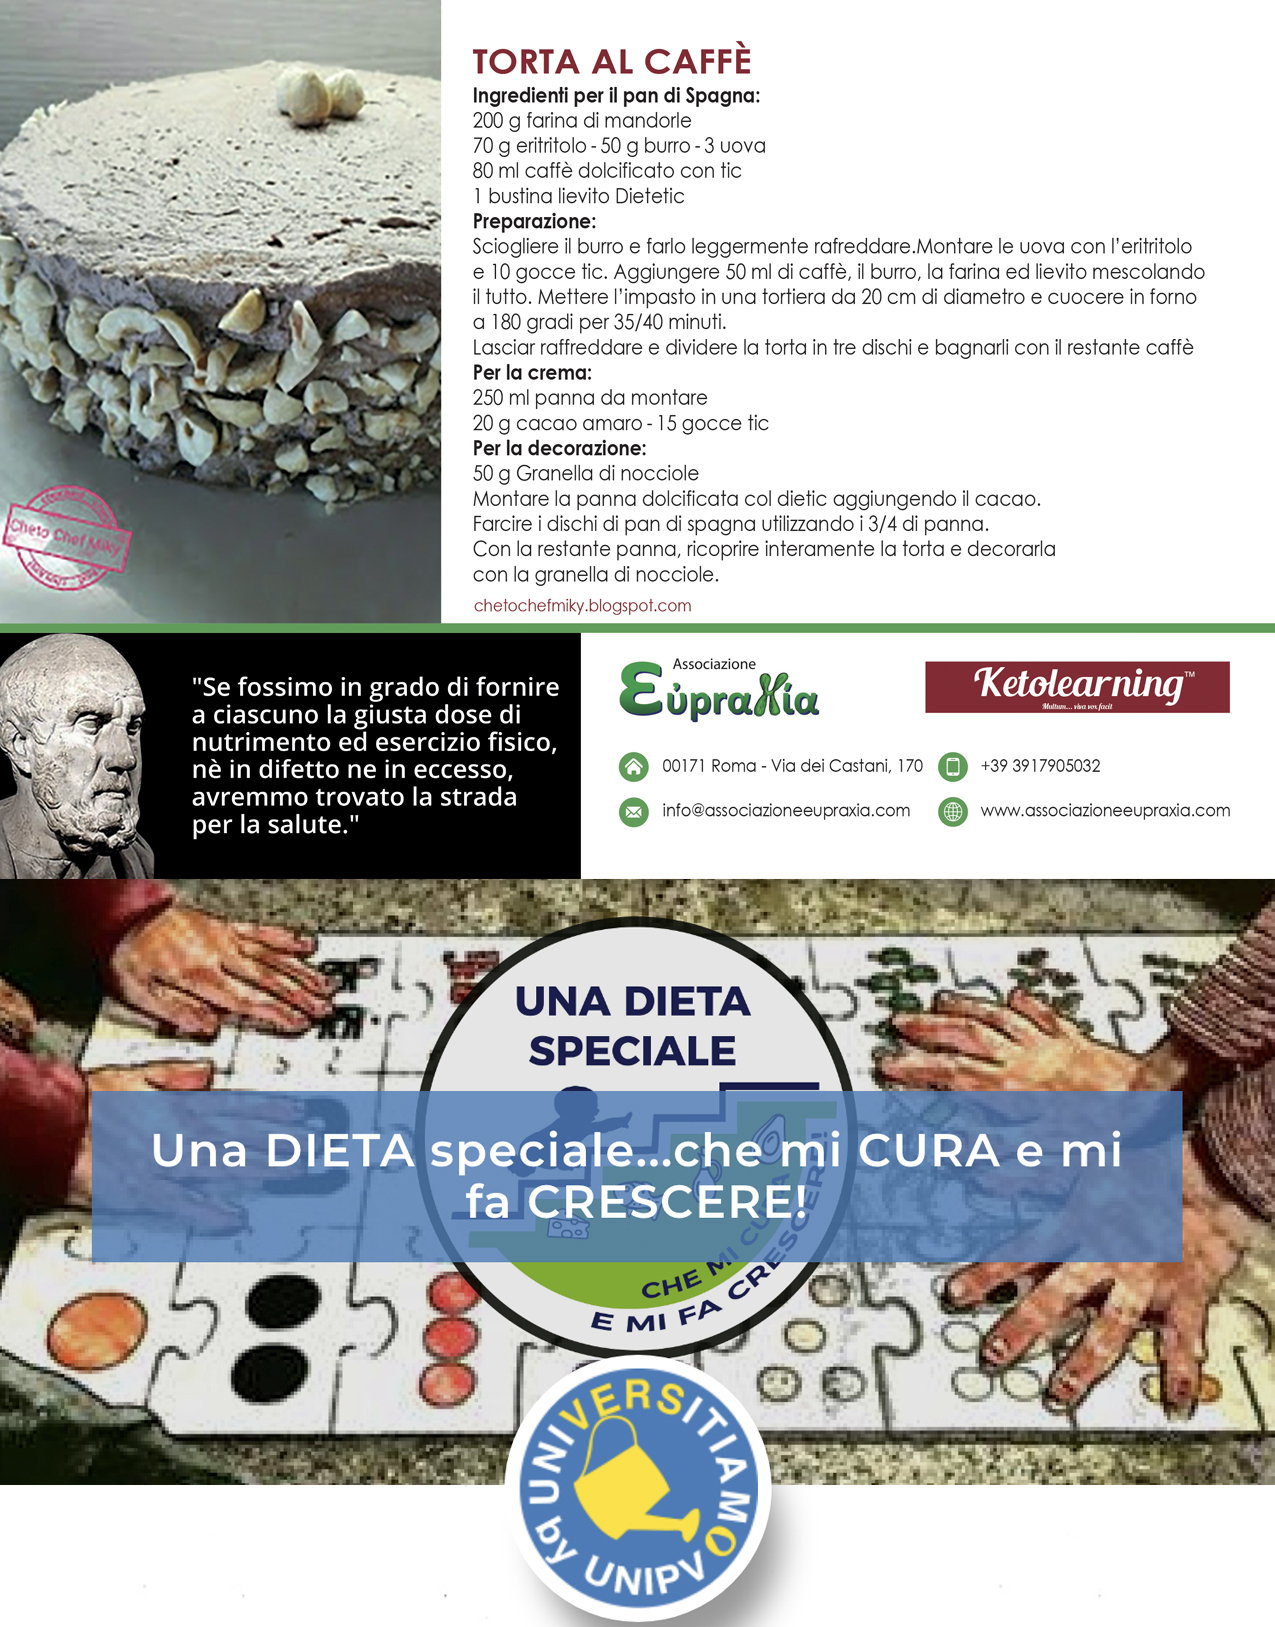 Featured image for “Associazione Eupraxia per  “Una DIETA speciale…che mi CURA e mi fa CRESCERE!””